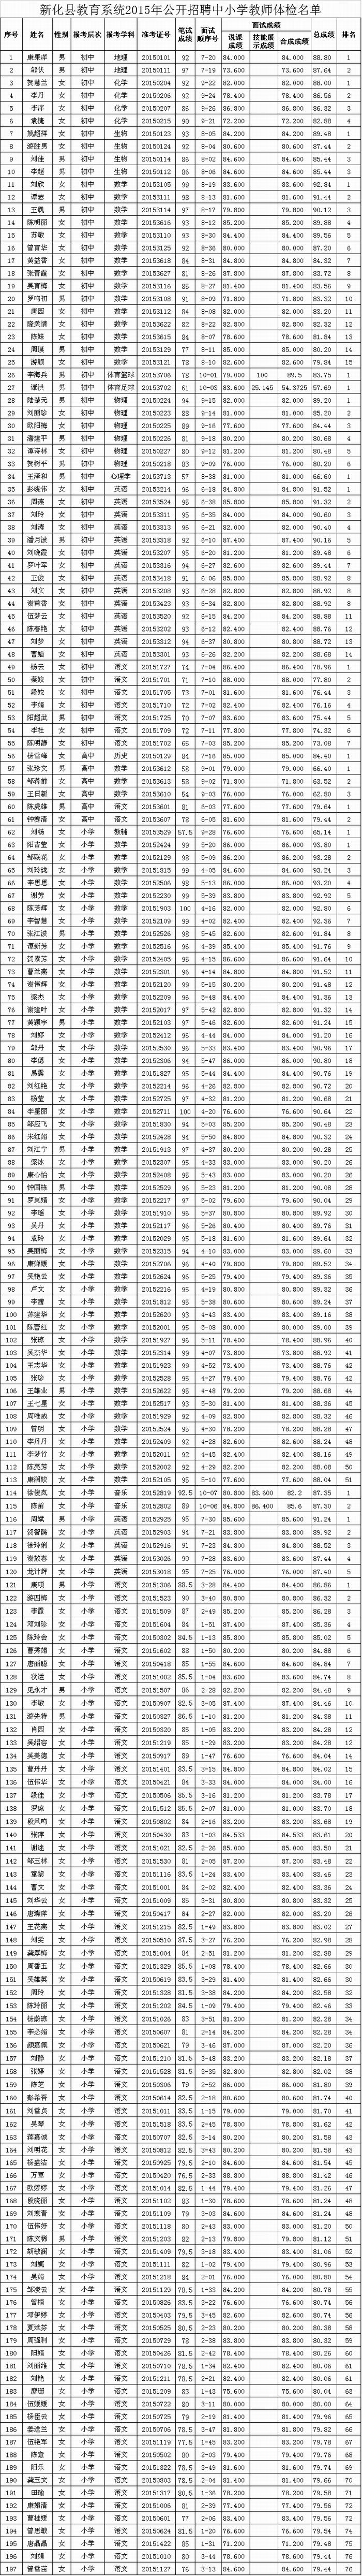 新化县教育系统2015年公开招聘中小学教师体检名单